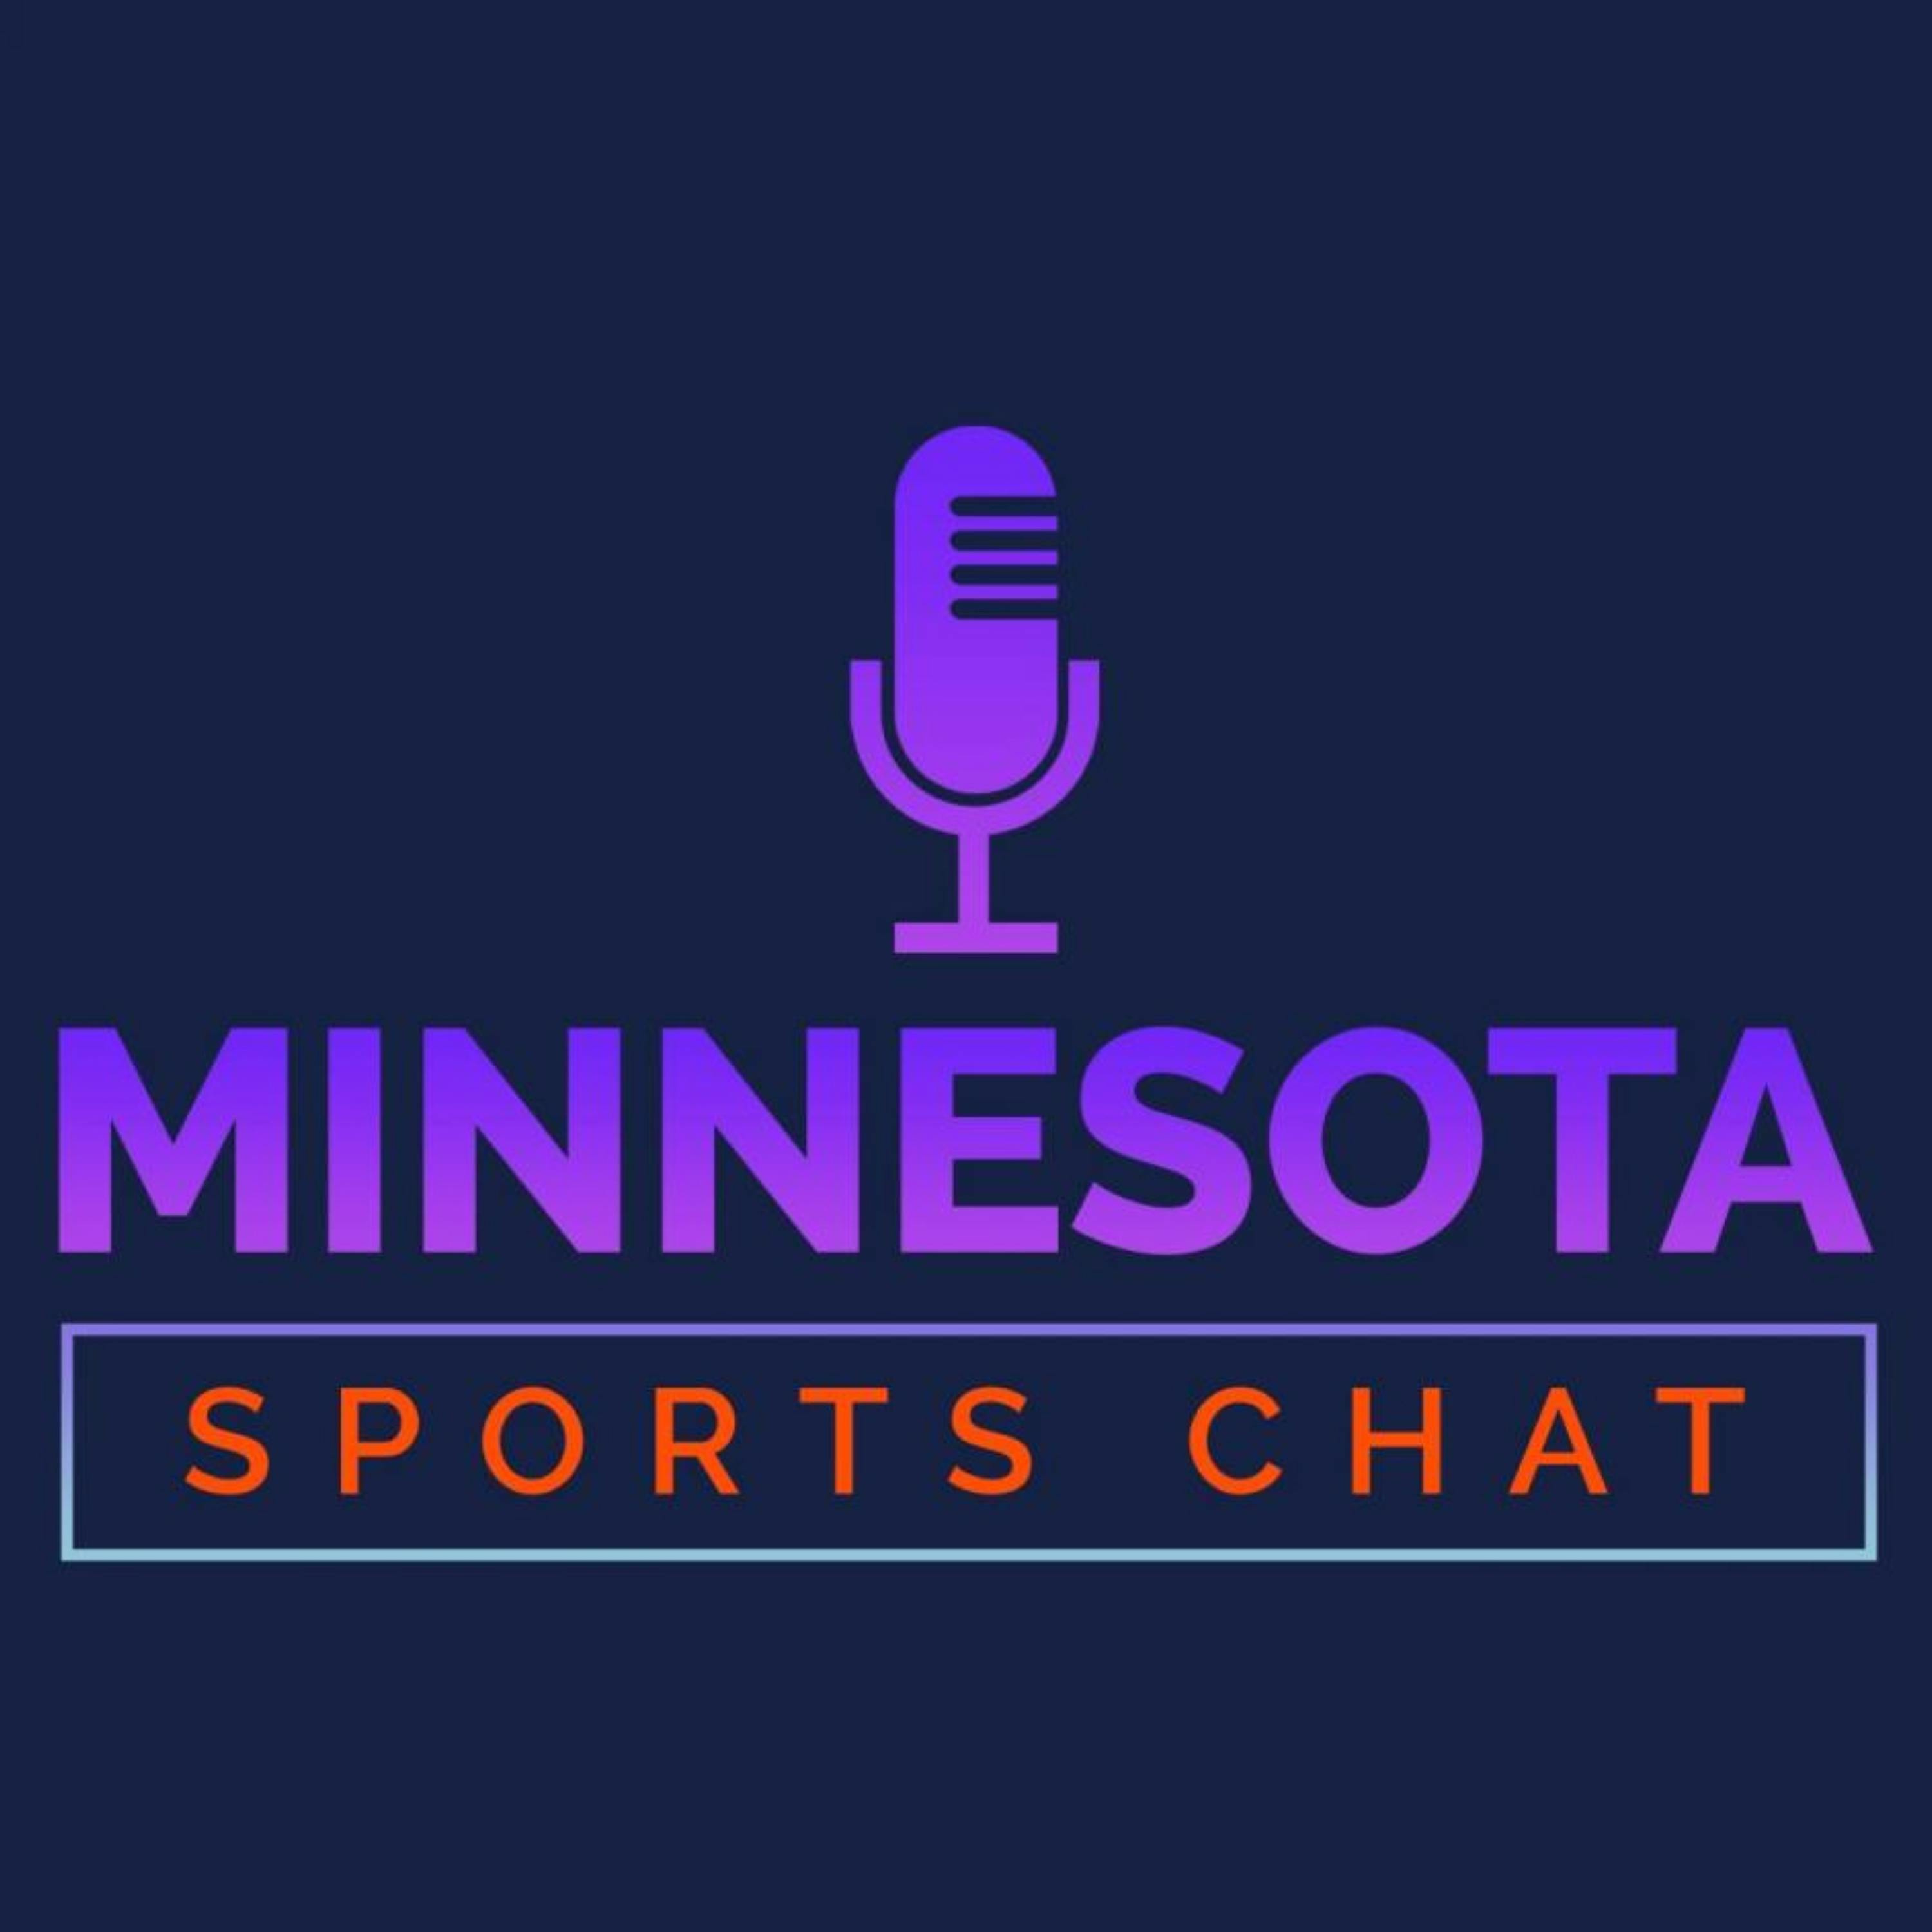 MINNESOTA SPORTS CHAT: Will Minnesota Wild TRADE Matt Dumba? - Edition #151